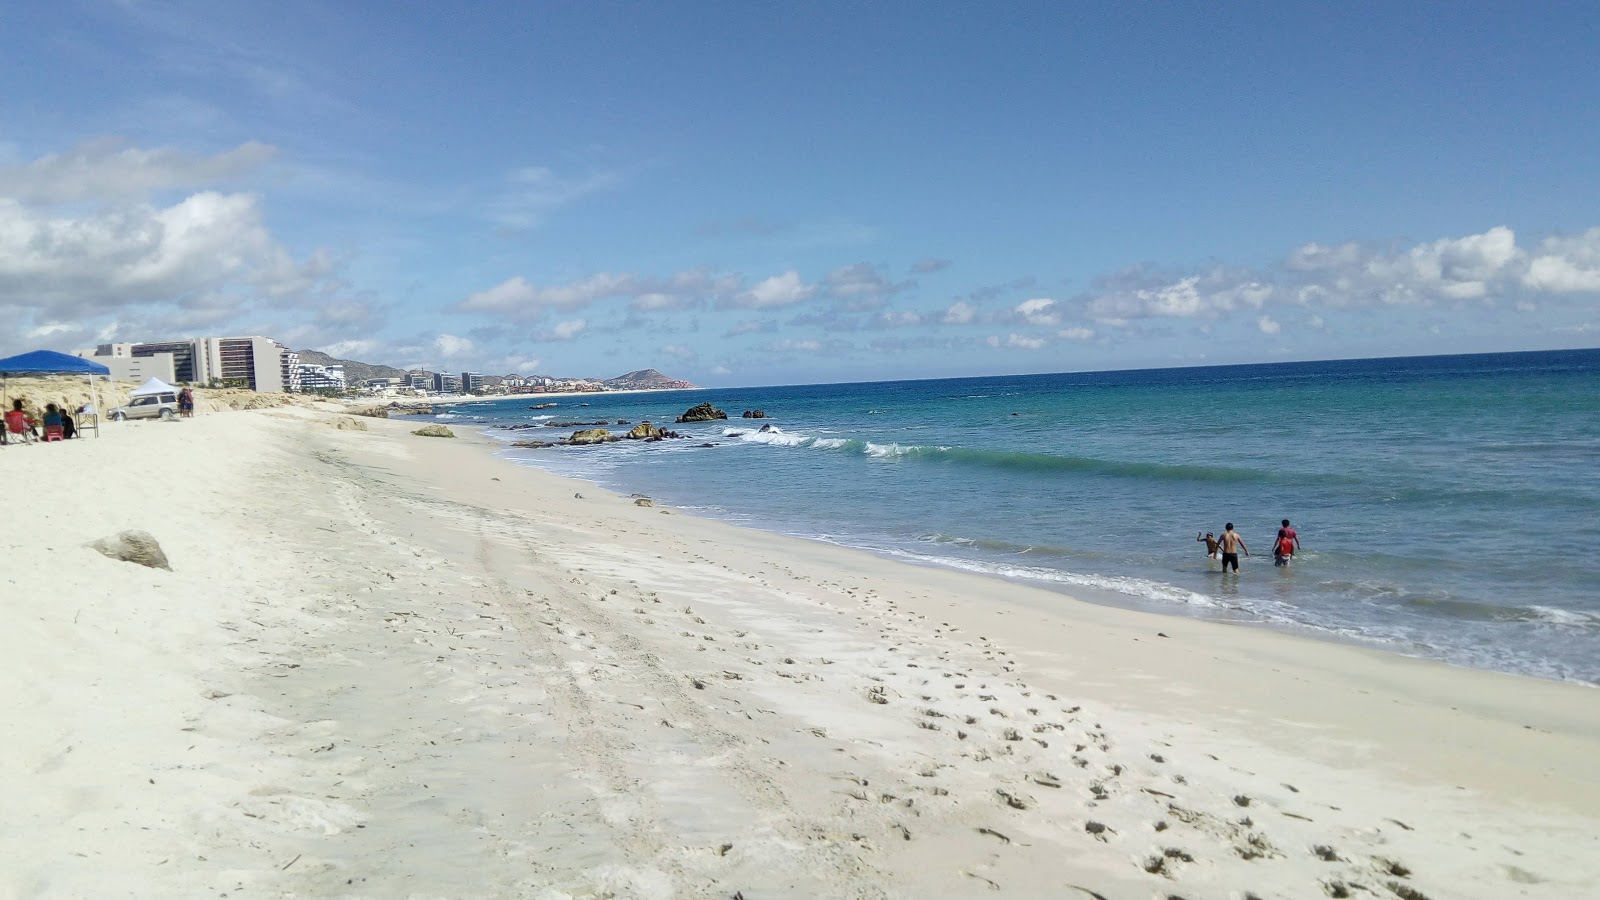 Playa Boca del Tule'in fotoğrafı parlak kum ve kayalar yüzey ile